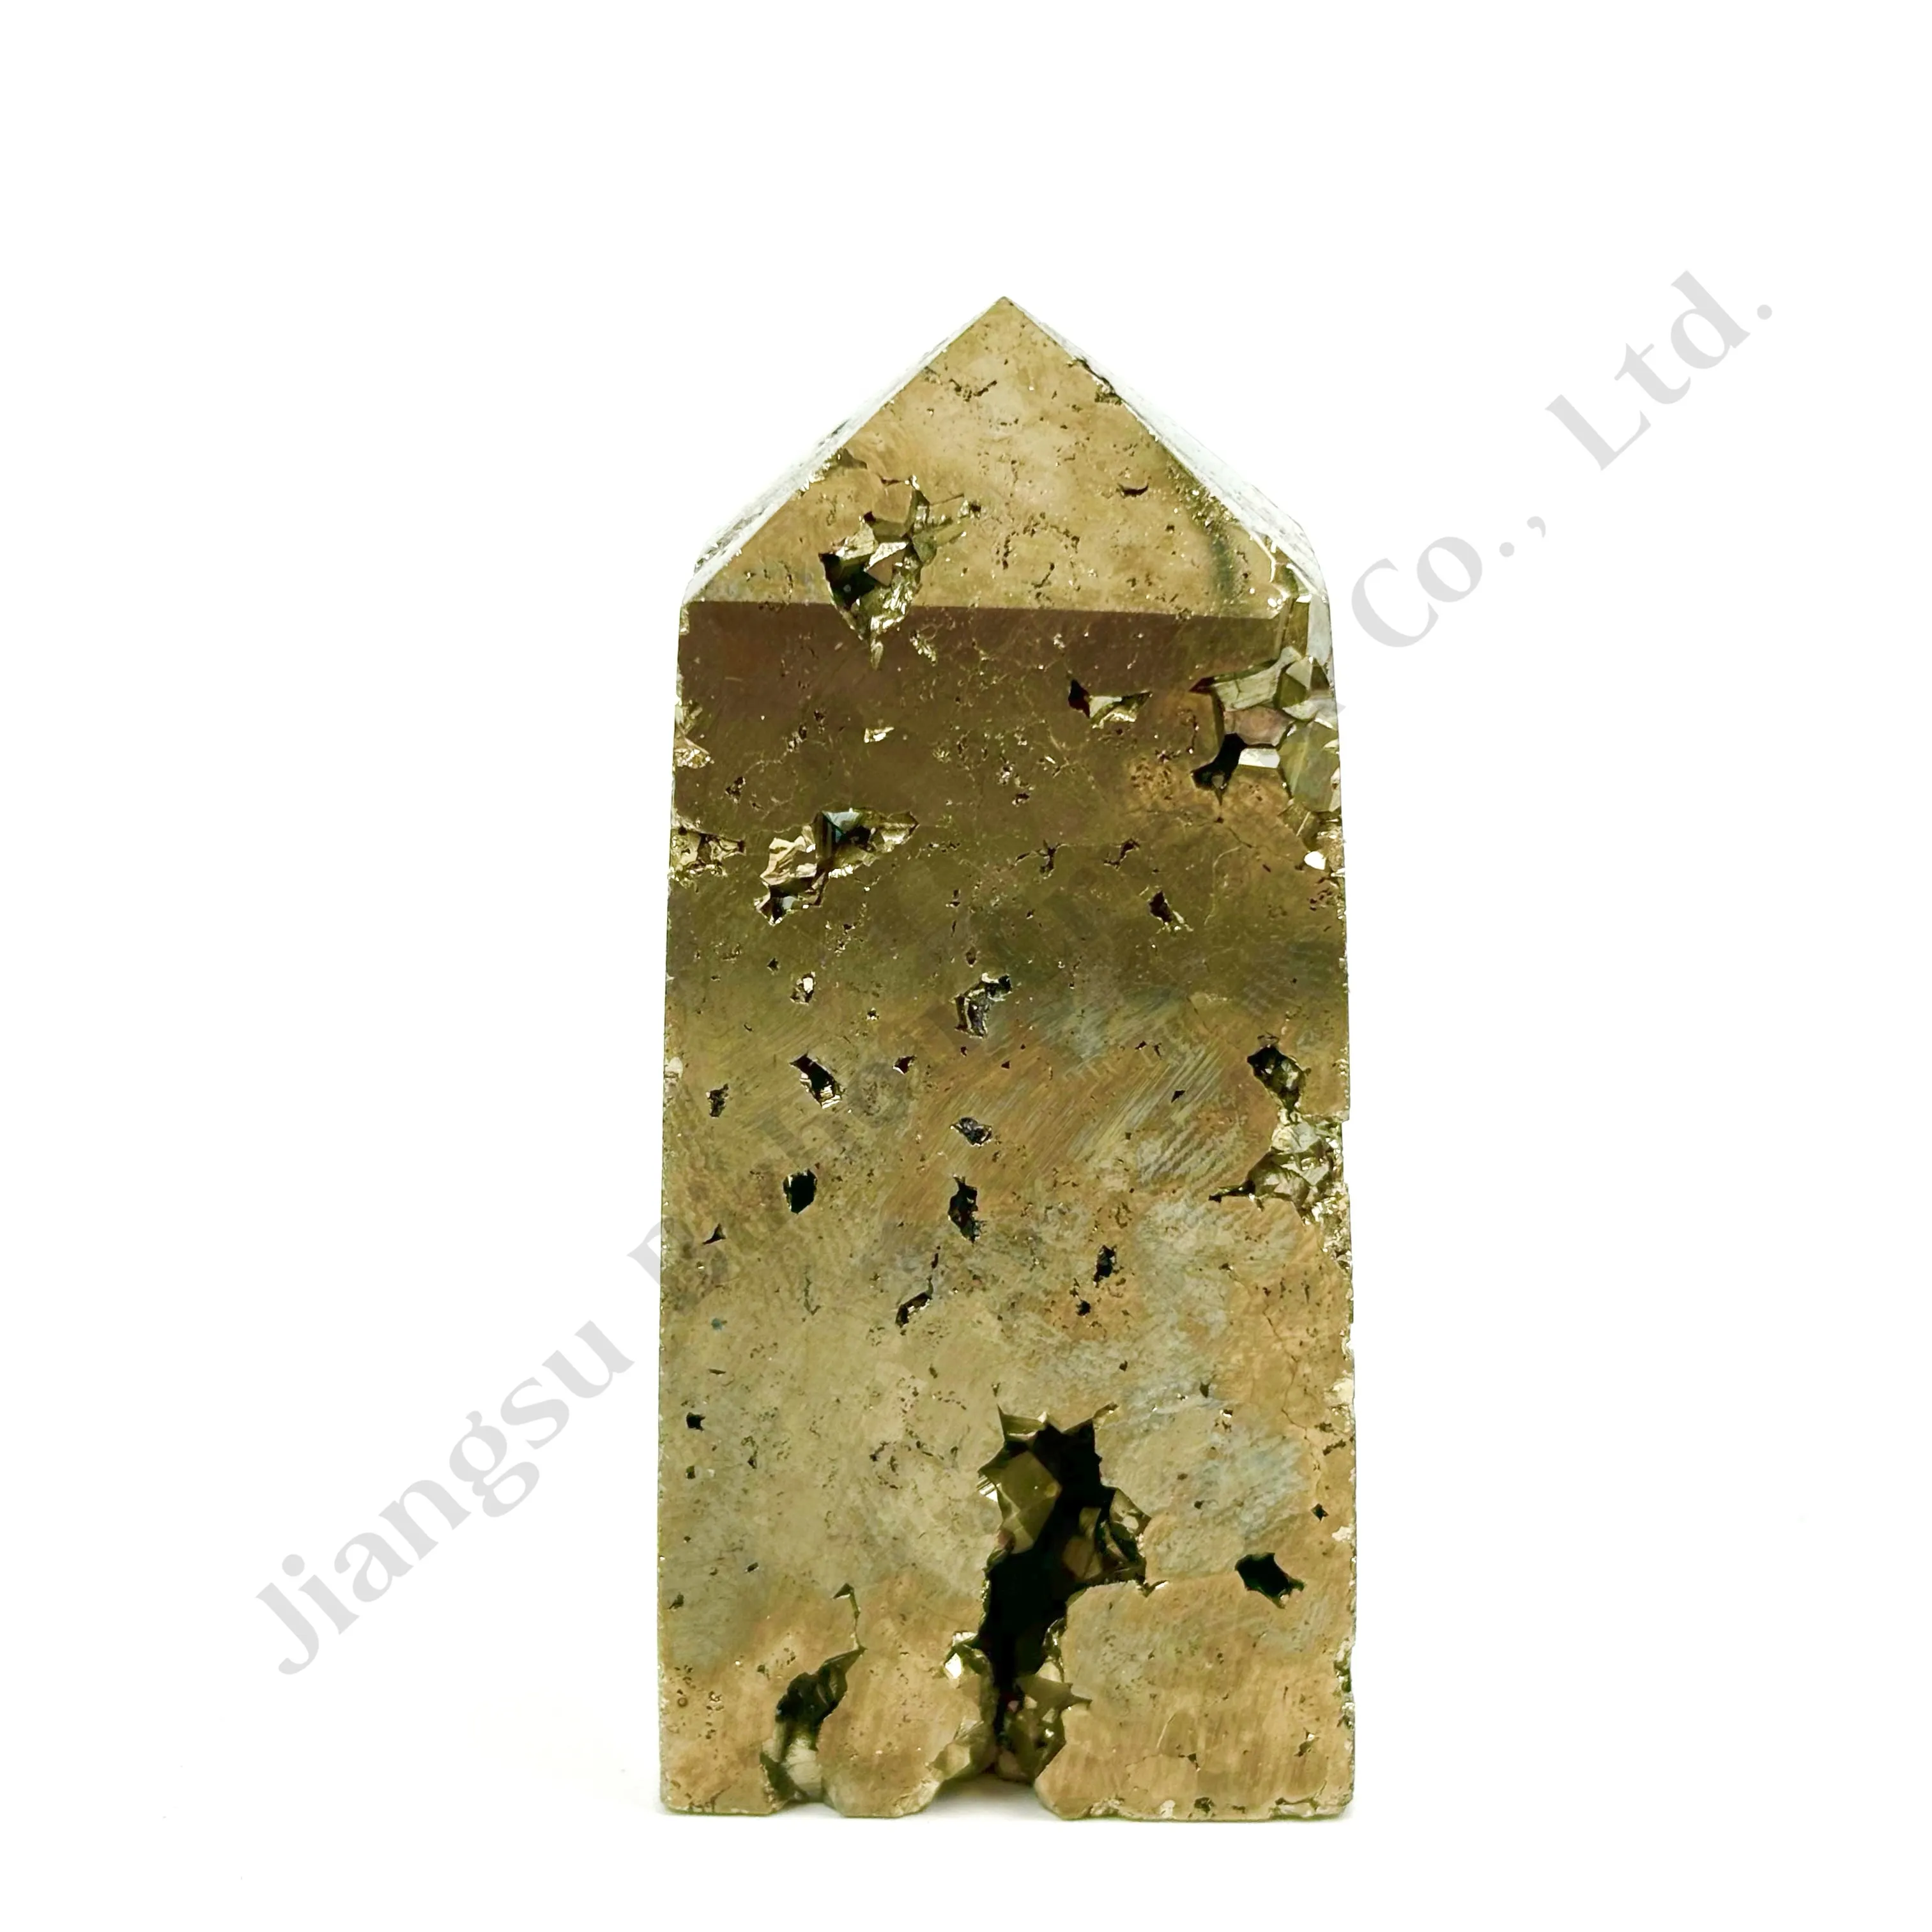 Torre de cristal de pedra drusa para produtos espirituais, cristal natural de alta qualidade esculpido em massa com 2 polegadas